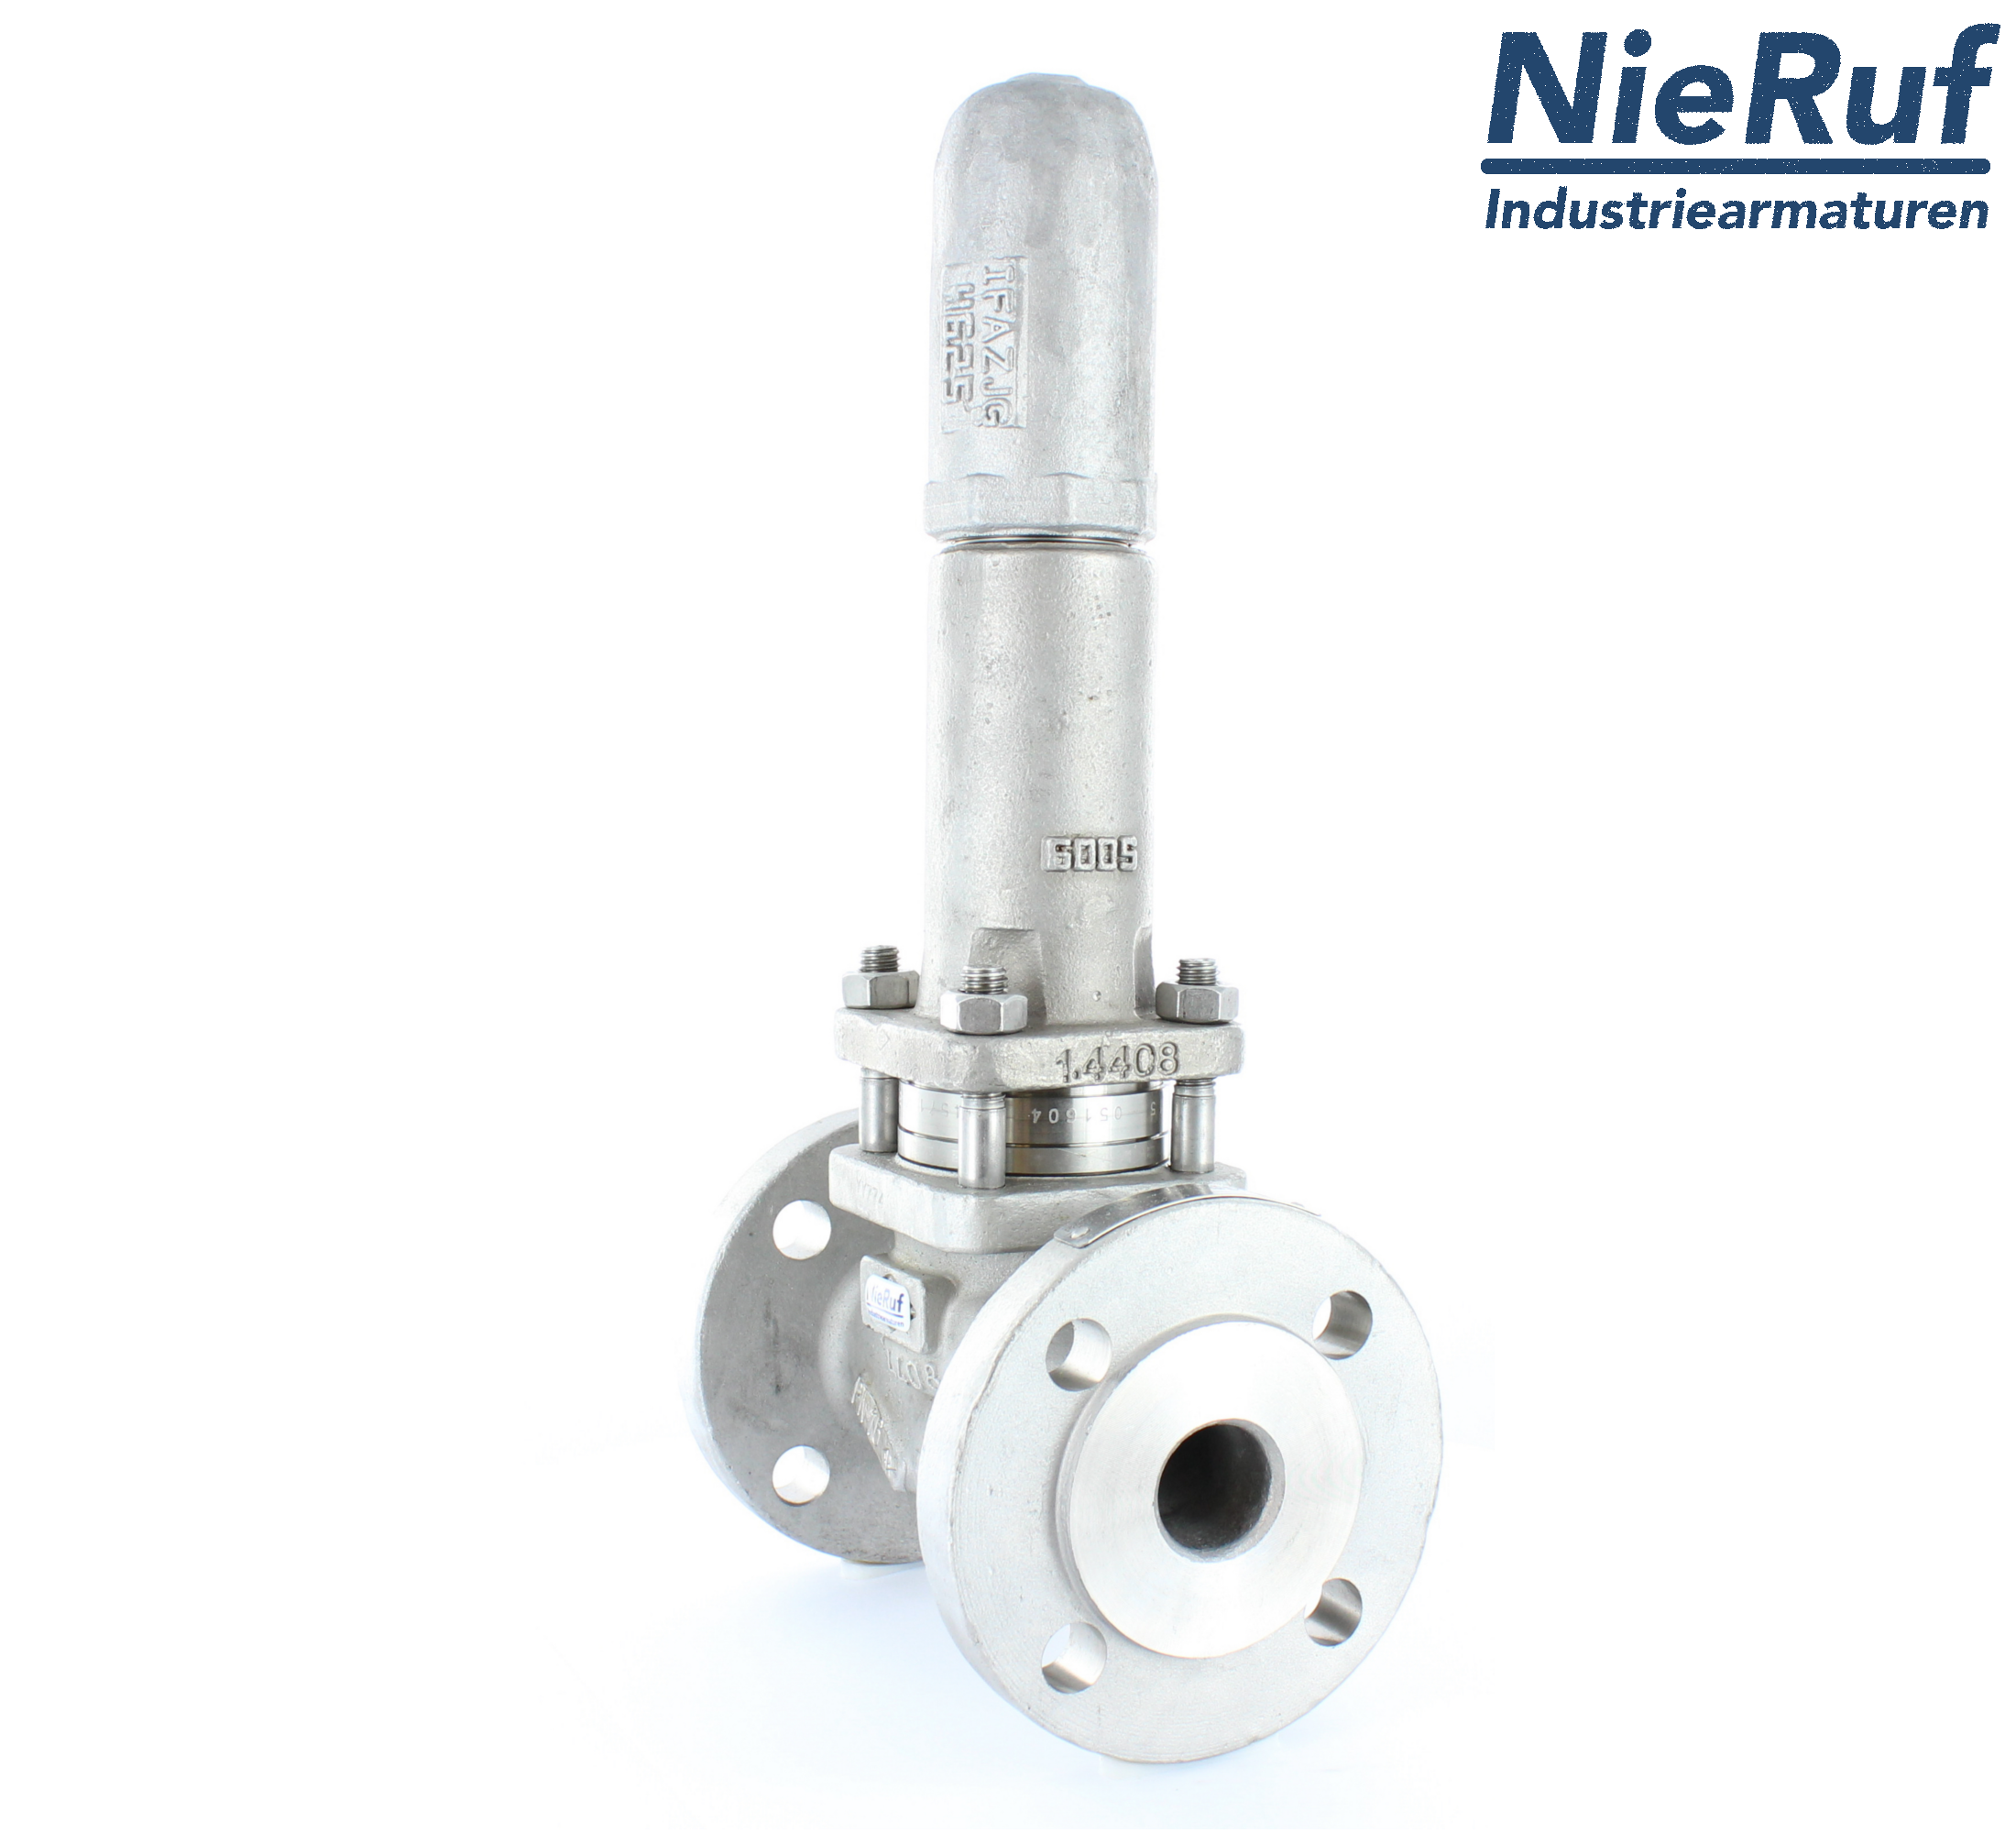 piston overflow valve DN 65 UV13 cast iron 1.0619+N 1,0 - 3,0 bar